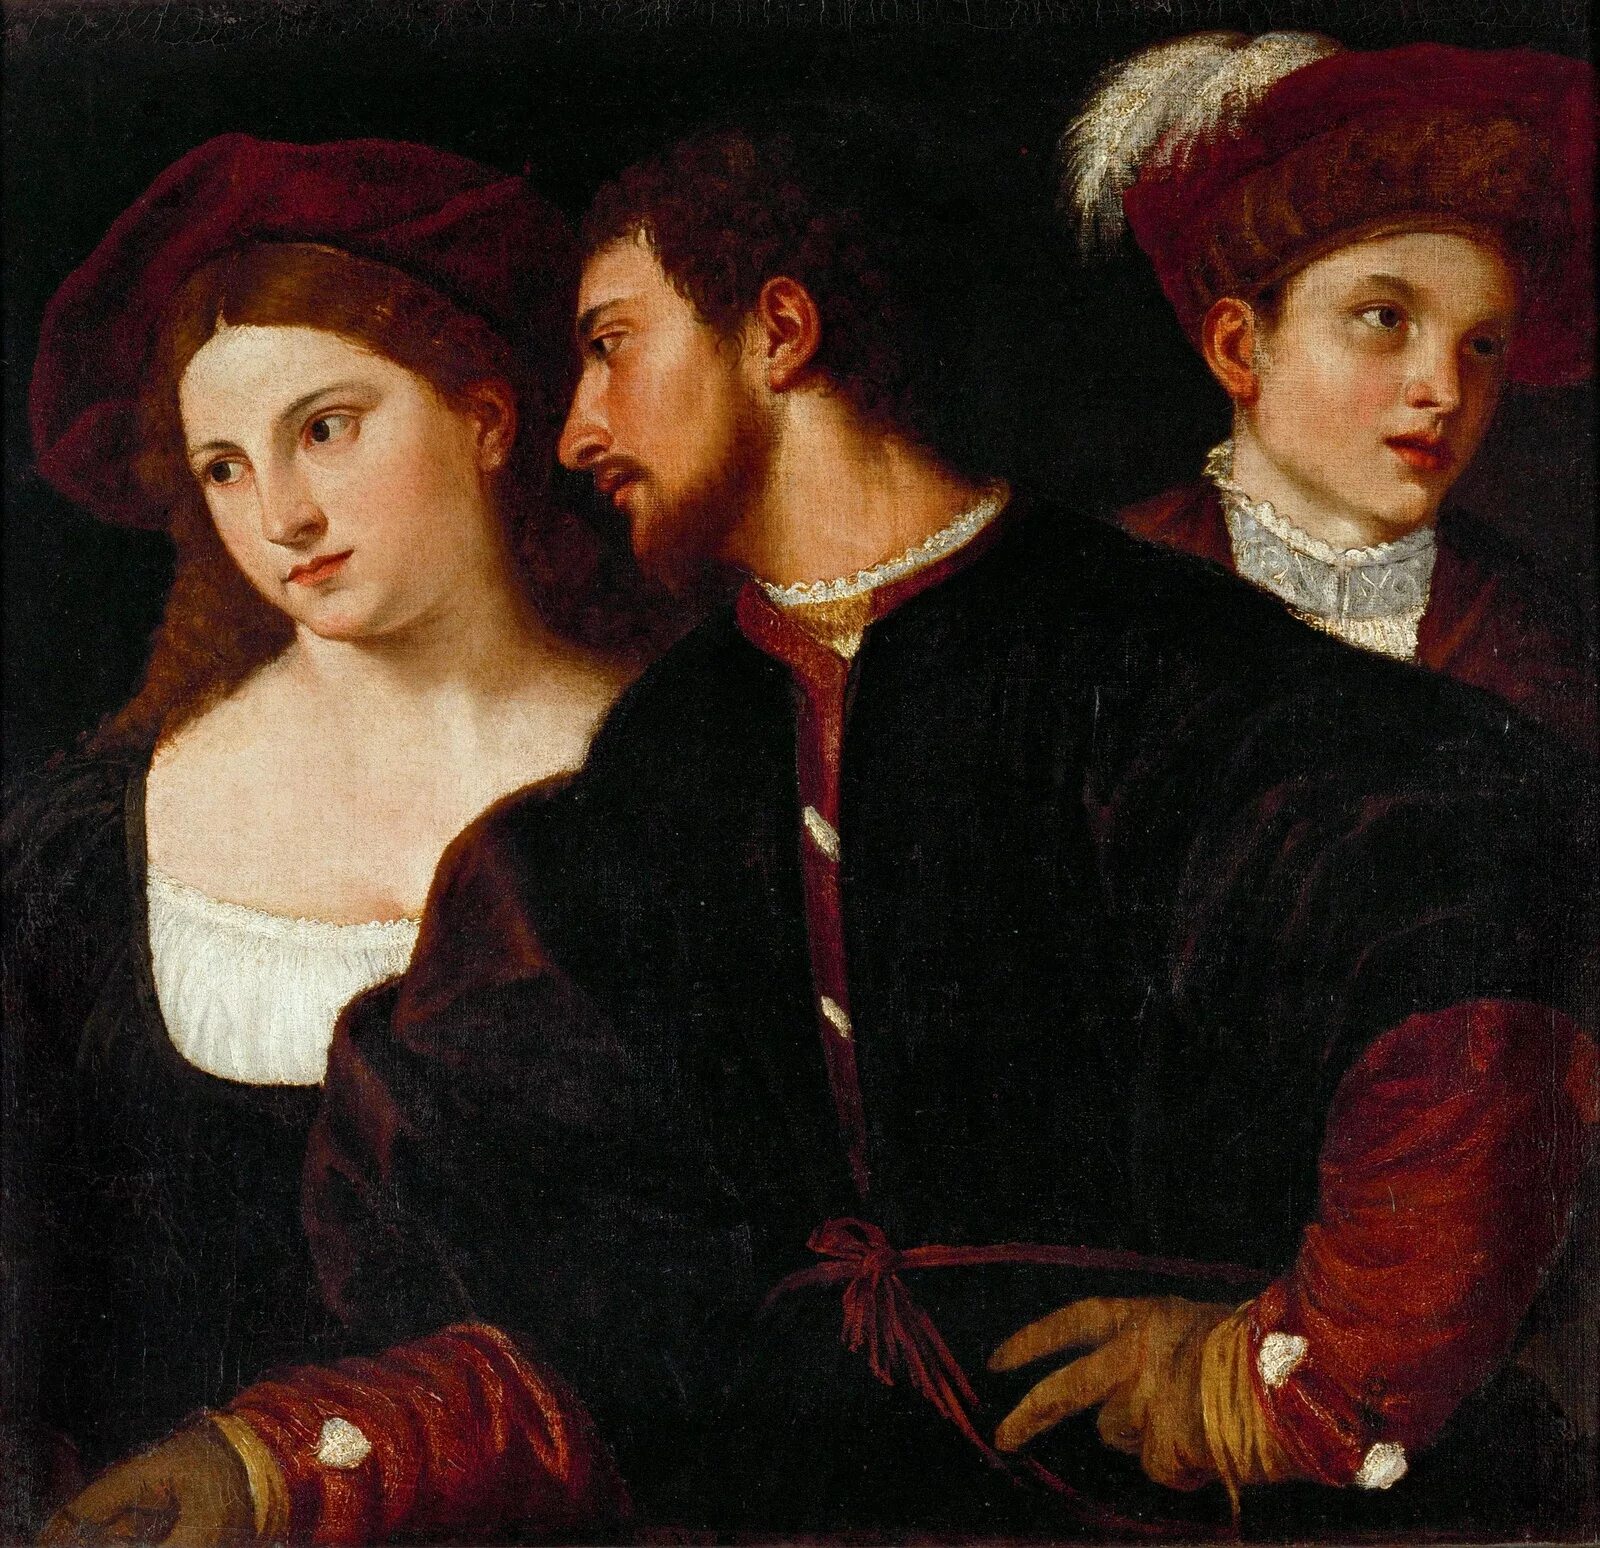 Любовь эпоху возрождения. Тициан эпоха Возрождения. Тициан Вече́ллио (1488/1490 - 1576). Тициан художник эпохи Возрождения. Портреты Возрождения Тициан.